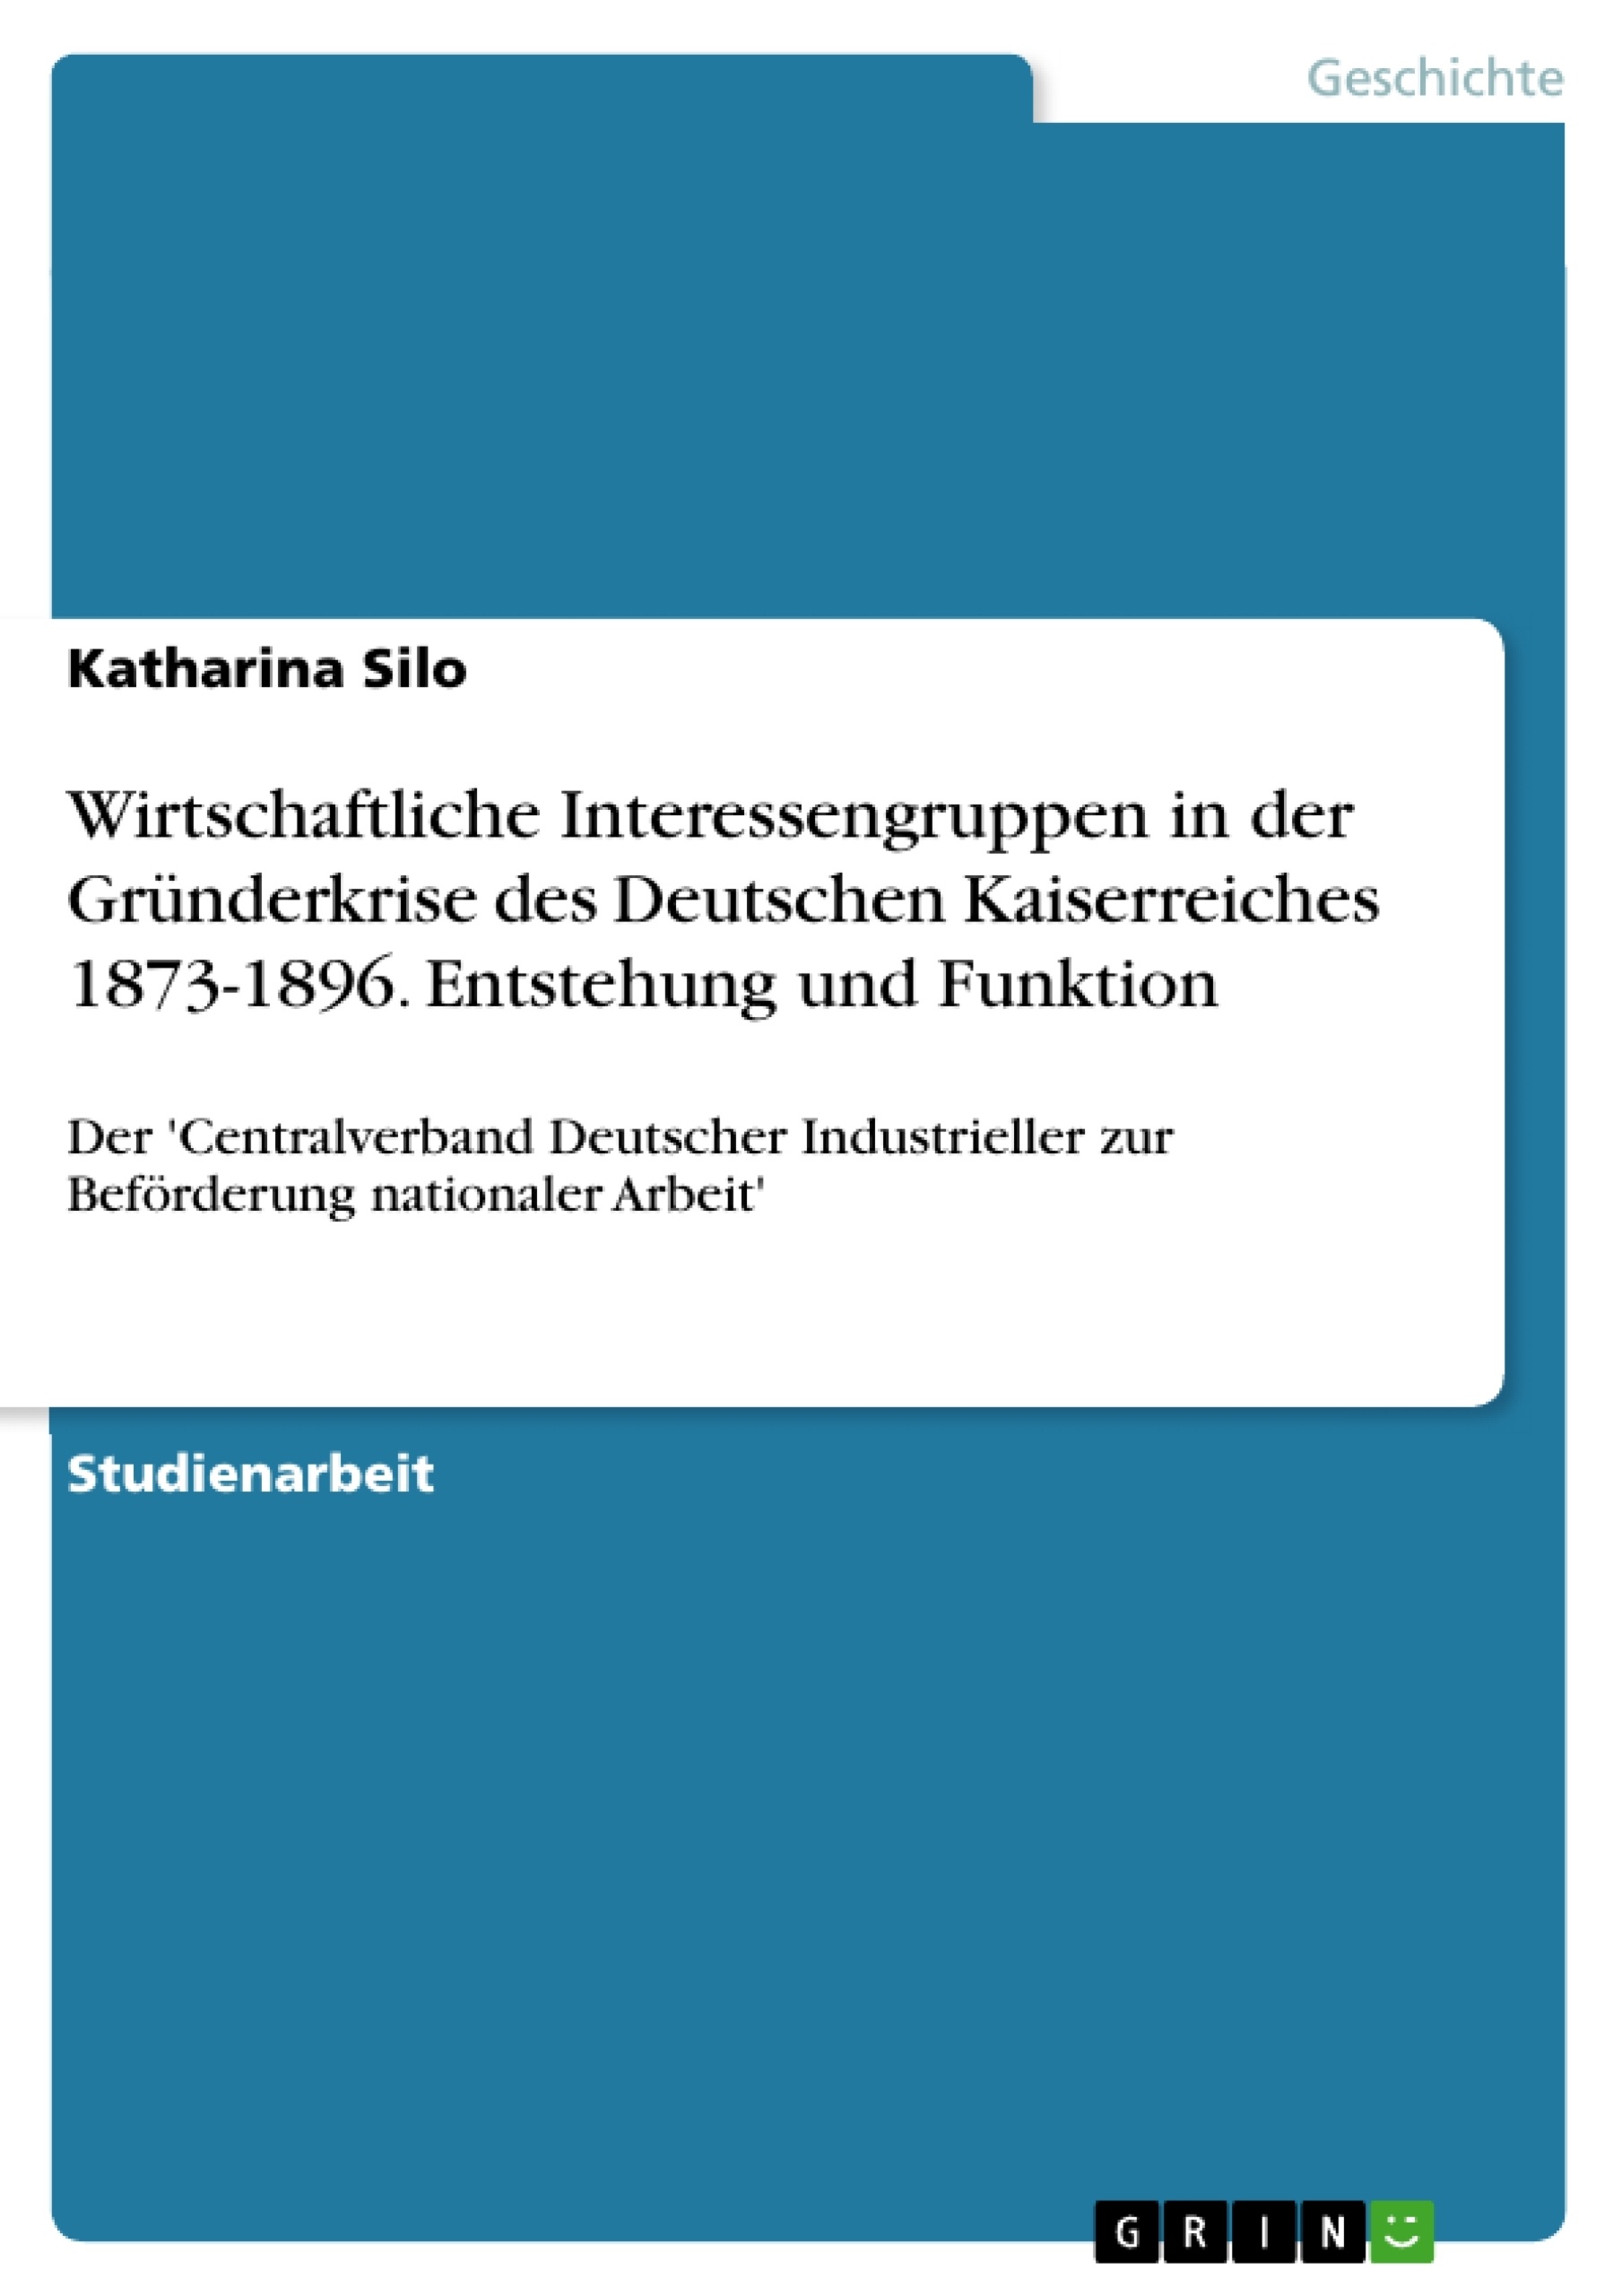 Titre: Wirtschaftliche Interessengruppen in der Gründerkrise des Deutschen Kaiserreiches 1873-1896. Entstehung und Funktion